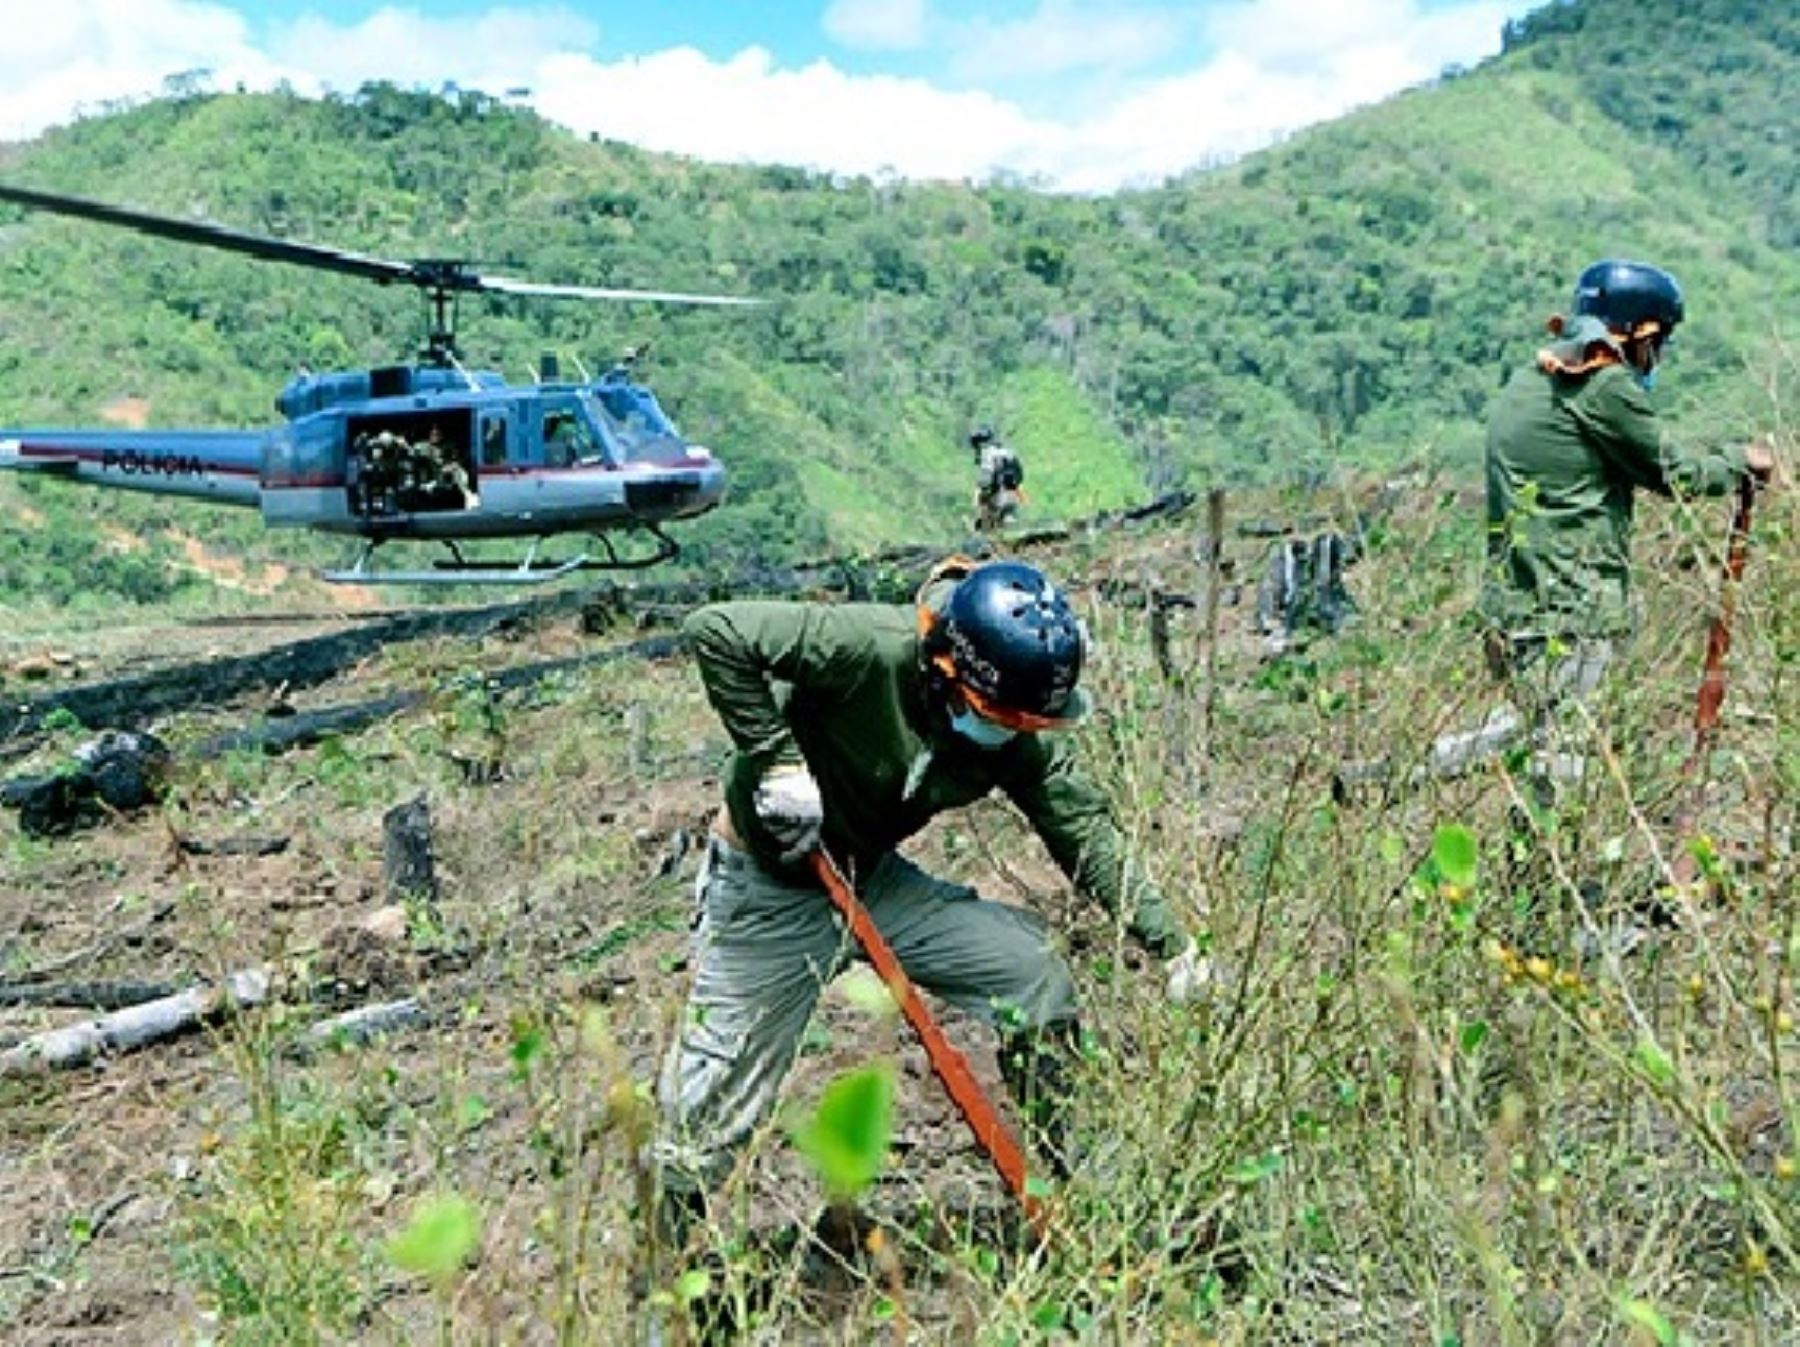 El Proyecto Corah erradicó en lo que va del año un total de 3,456 hectáreas de cultivos ilegales de hoja de coca en Huánuco y Ucayali, informó el Ministerio del Interior.